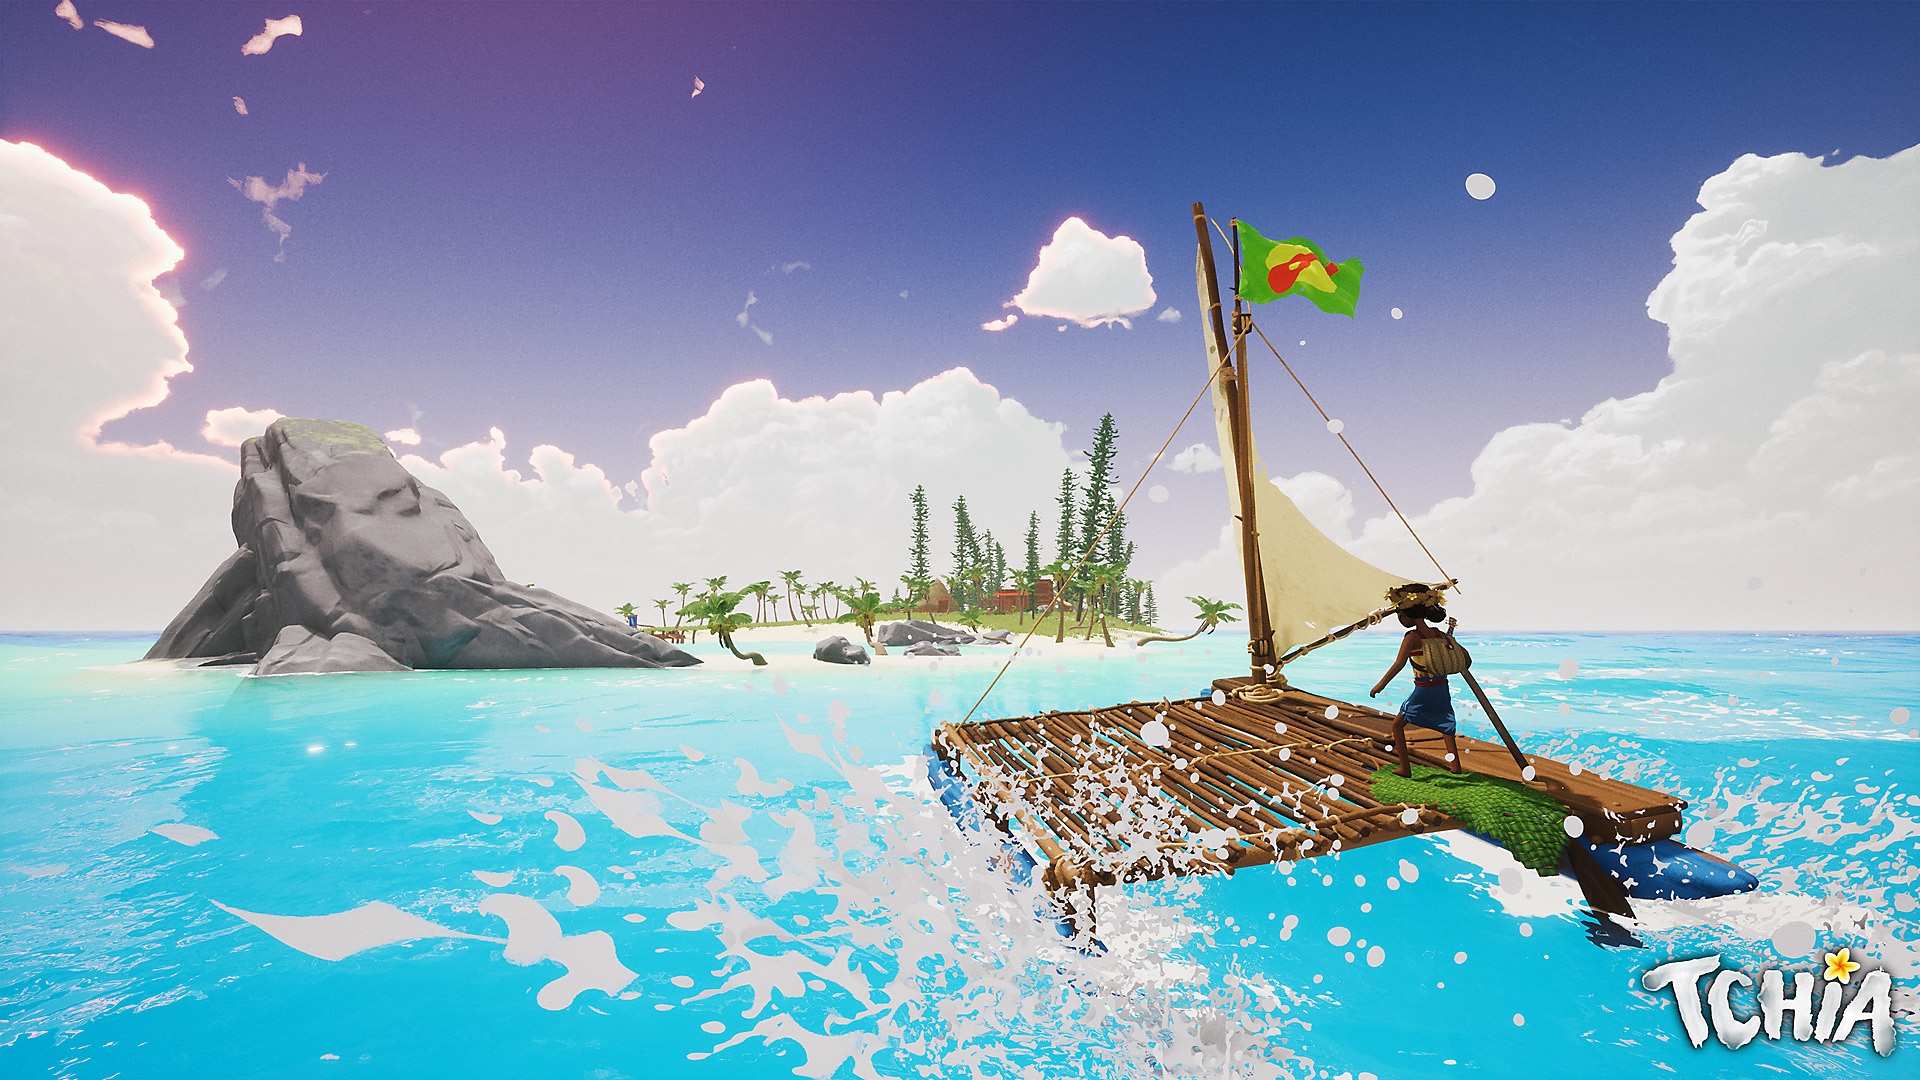 Capture d'écran de Tchia montrant le personnage principal sur un radeau en train de naviguer en direction d'une île